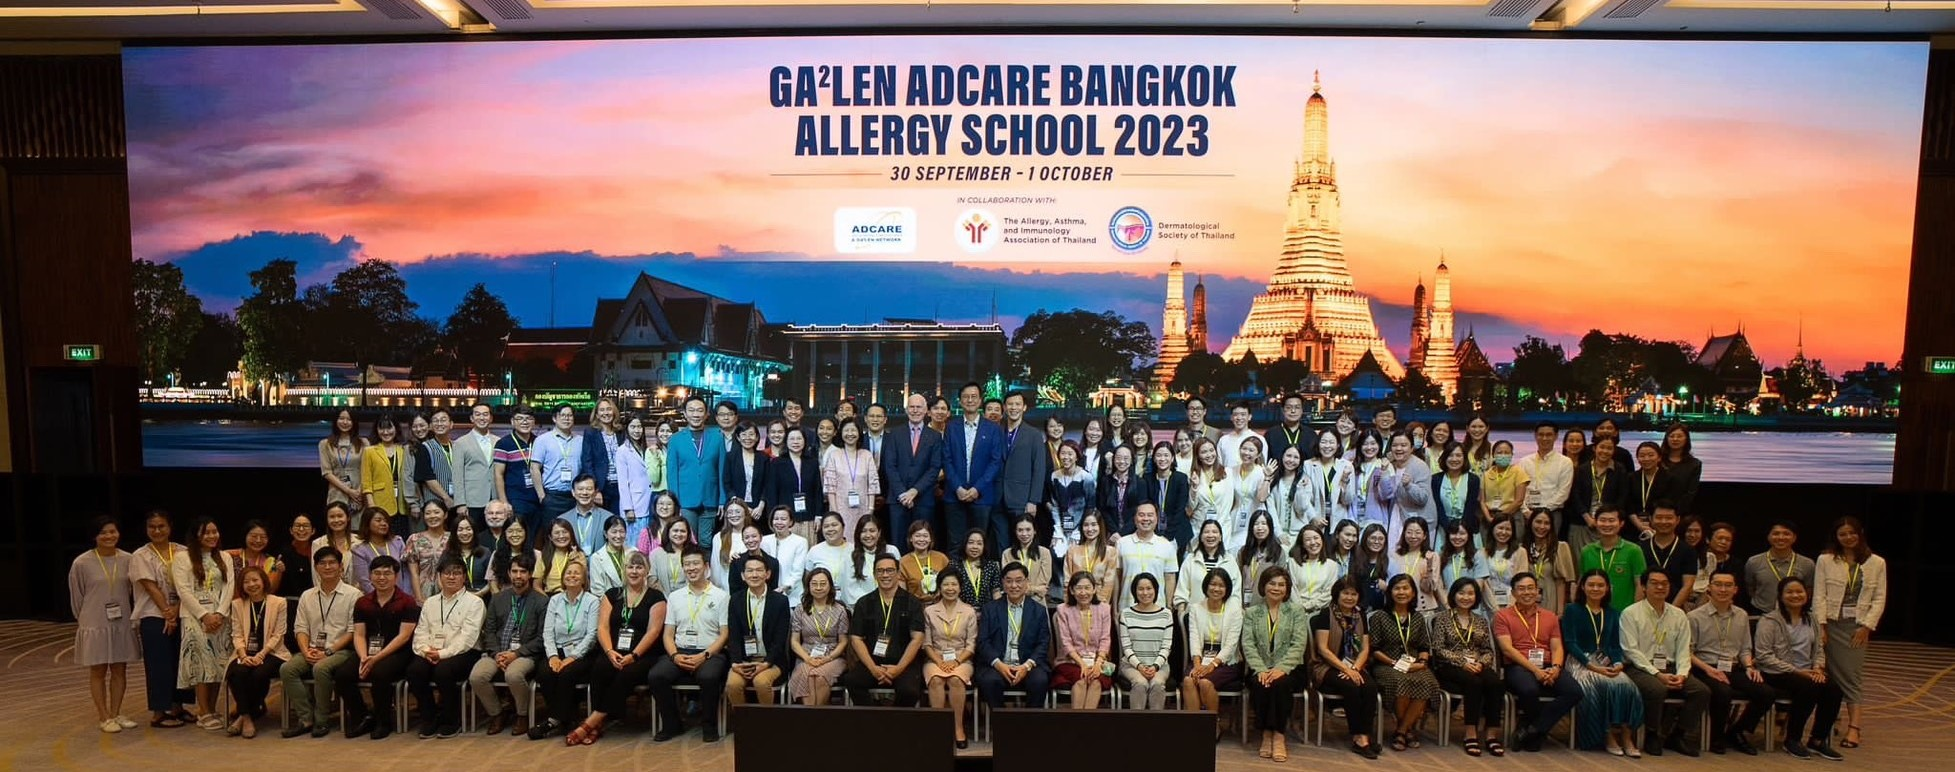 สมาคมแพทย์ผิวหนังฯร่วมกับสมาคมโรคภูมิแพ้ โรคหืดฯ จัดการประชุม GA²LEN  ADCARE Allergy School Bangkok